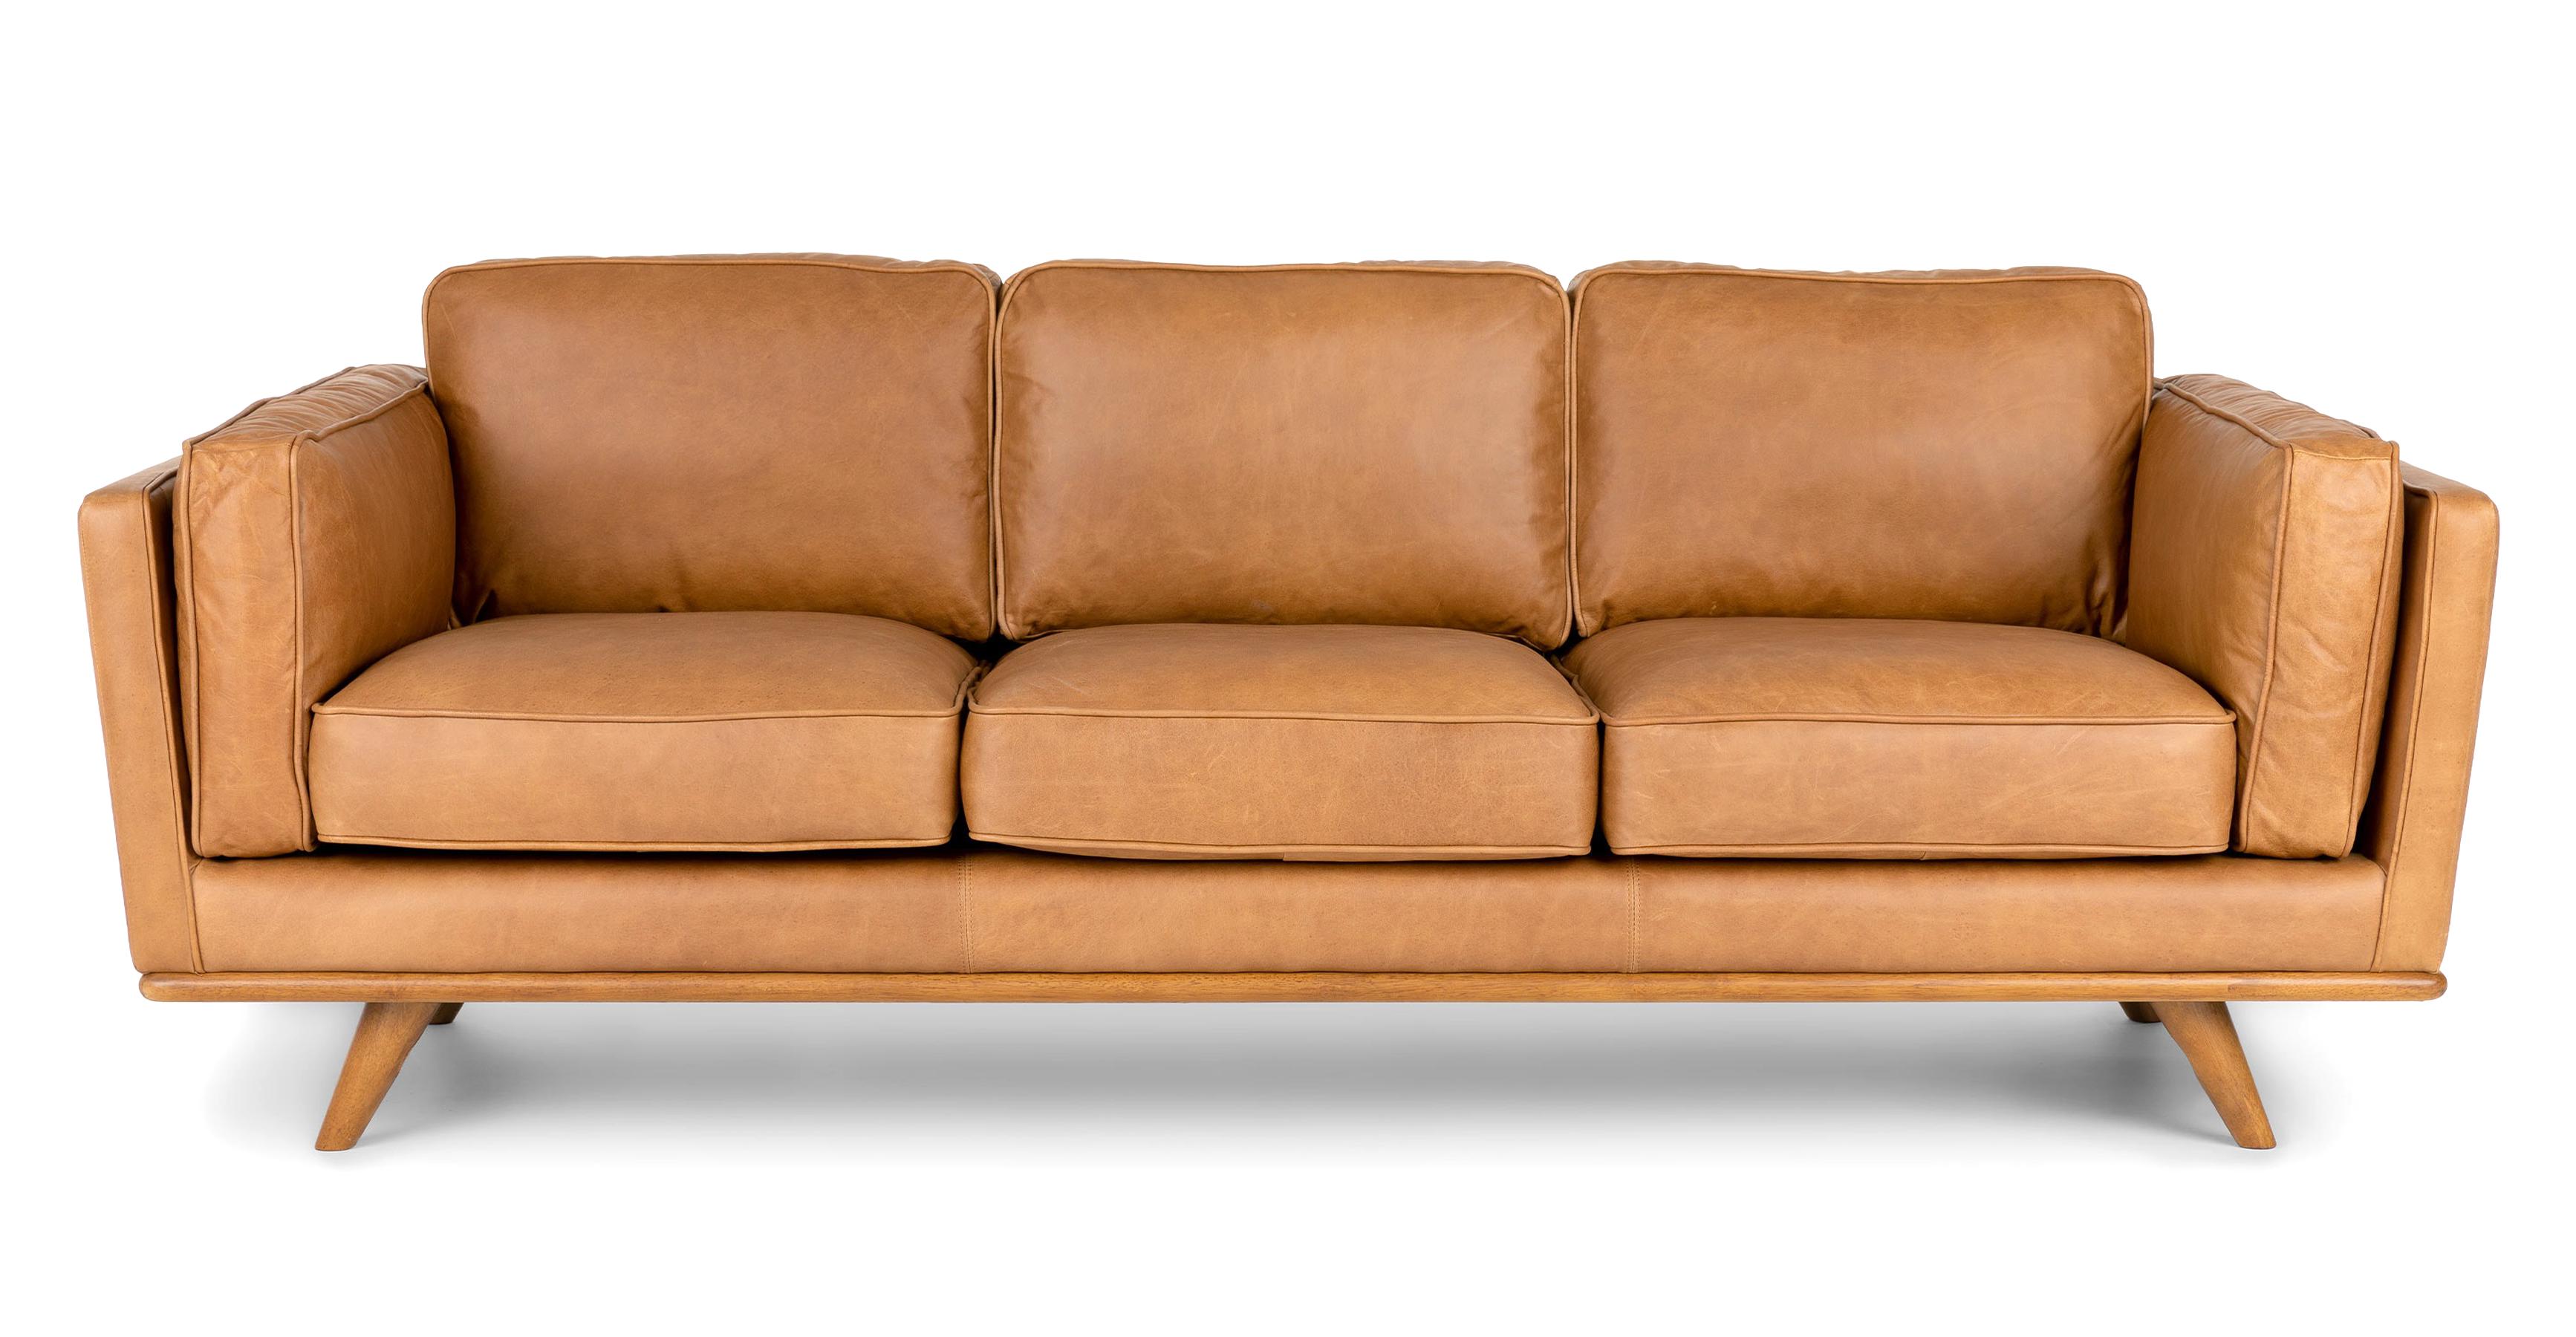 7 tufted tan leather sofa